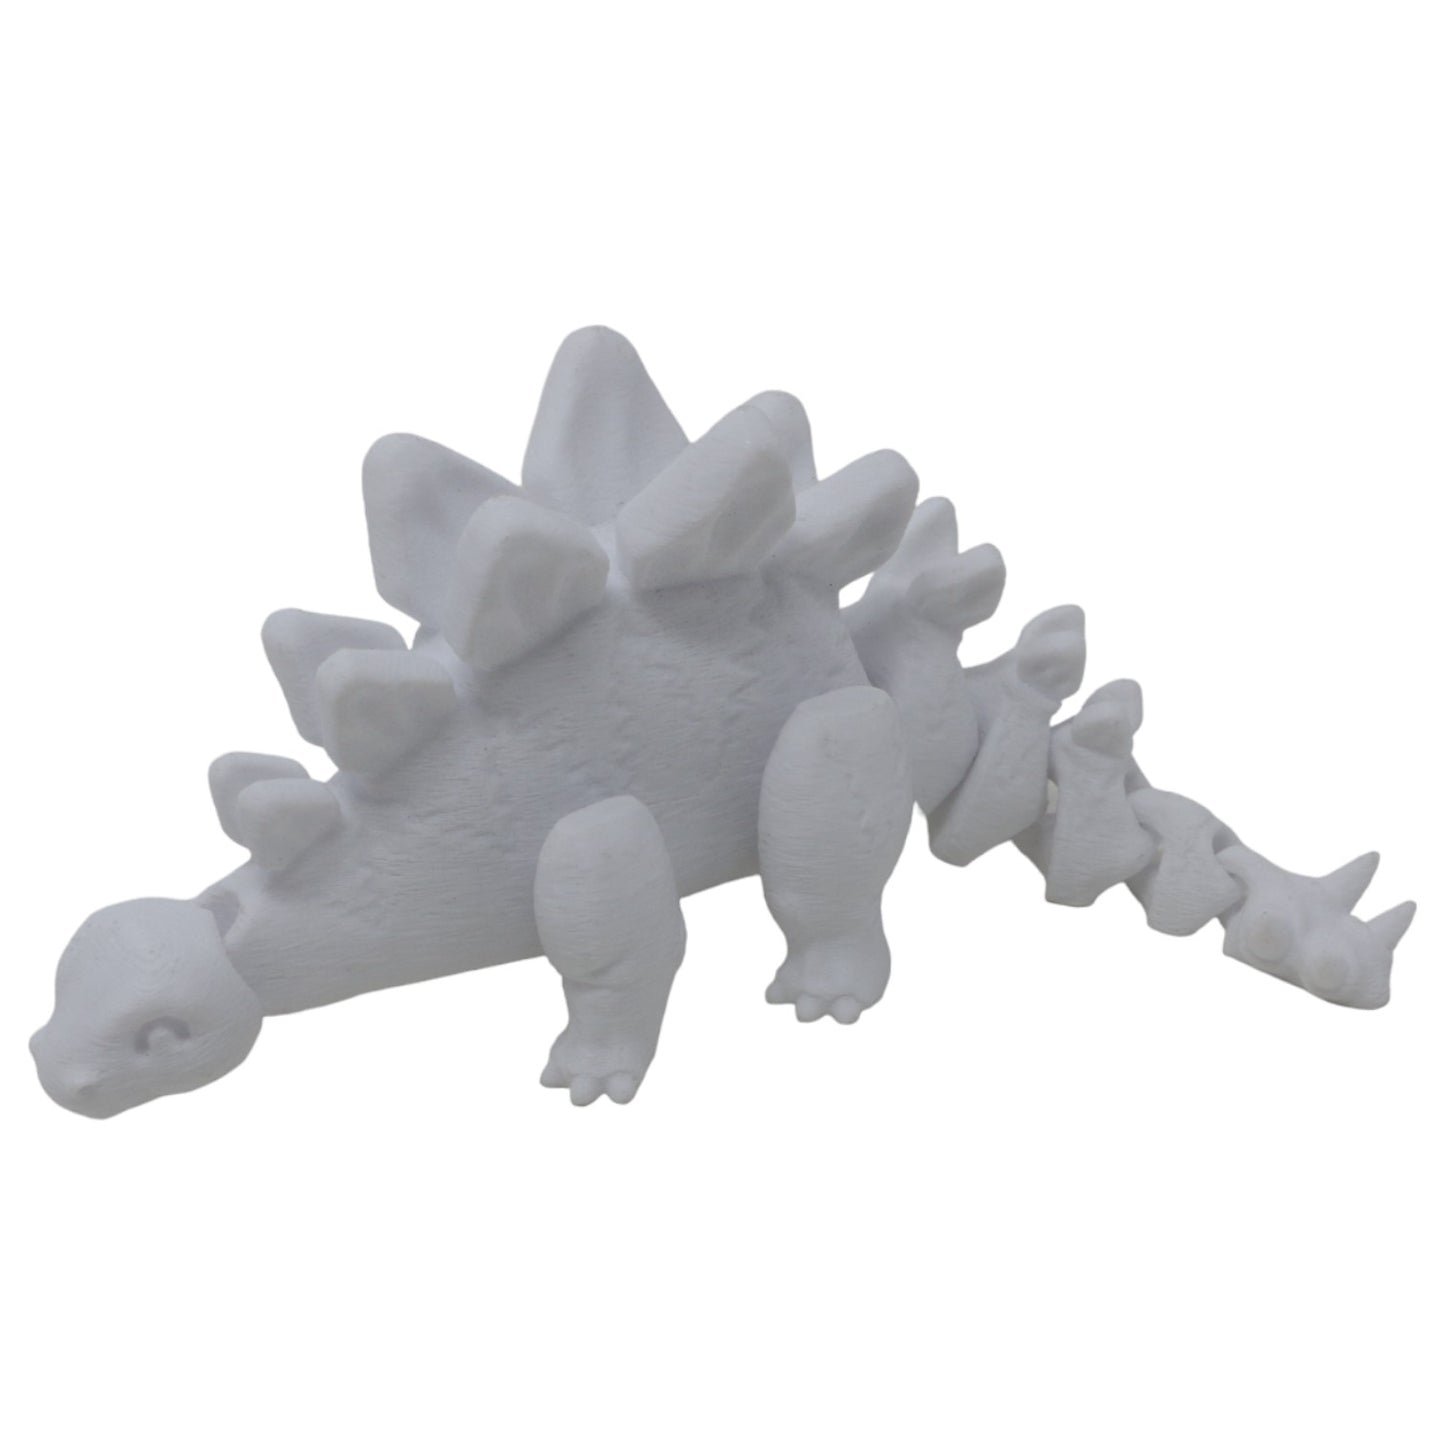 Stoic Stegosaurus